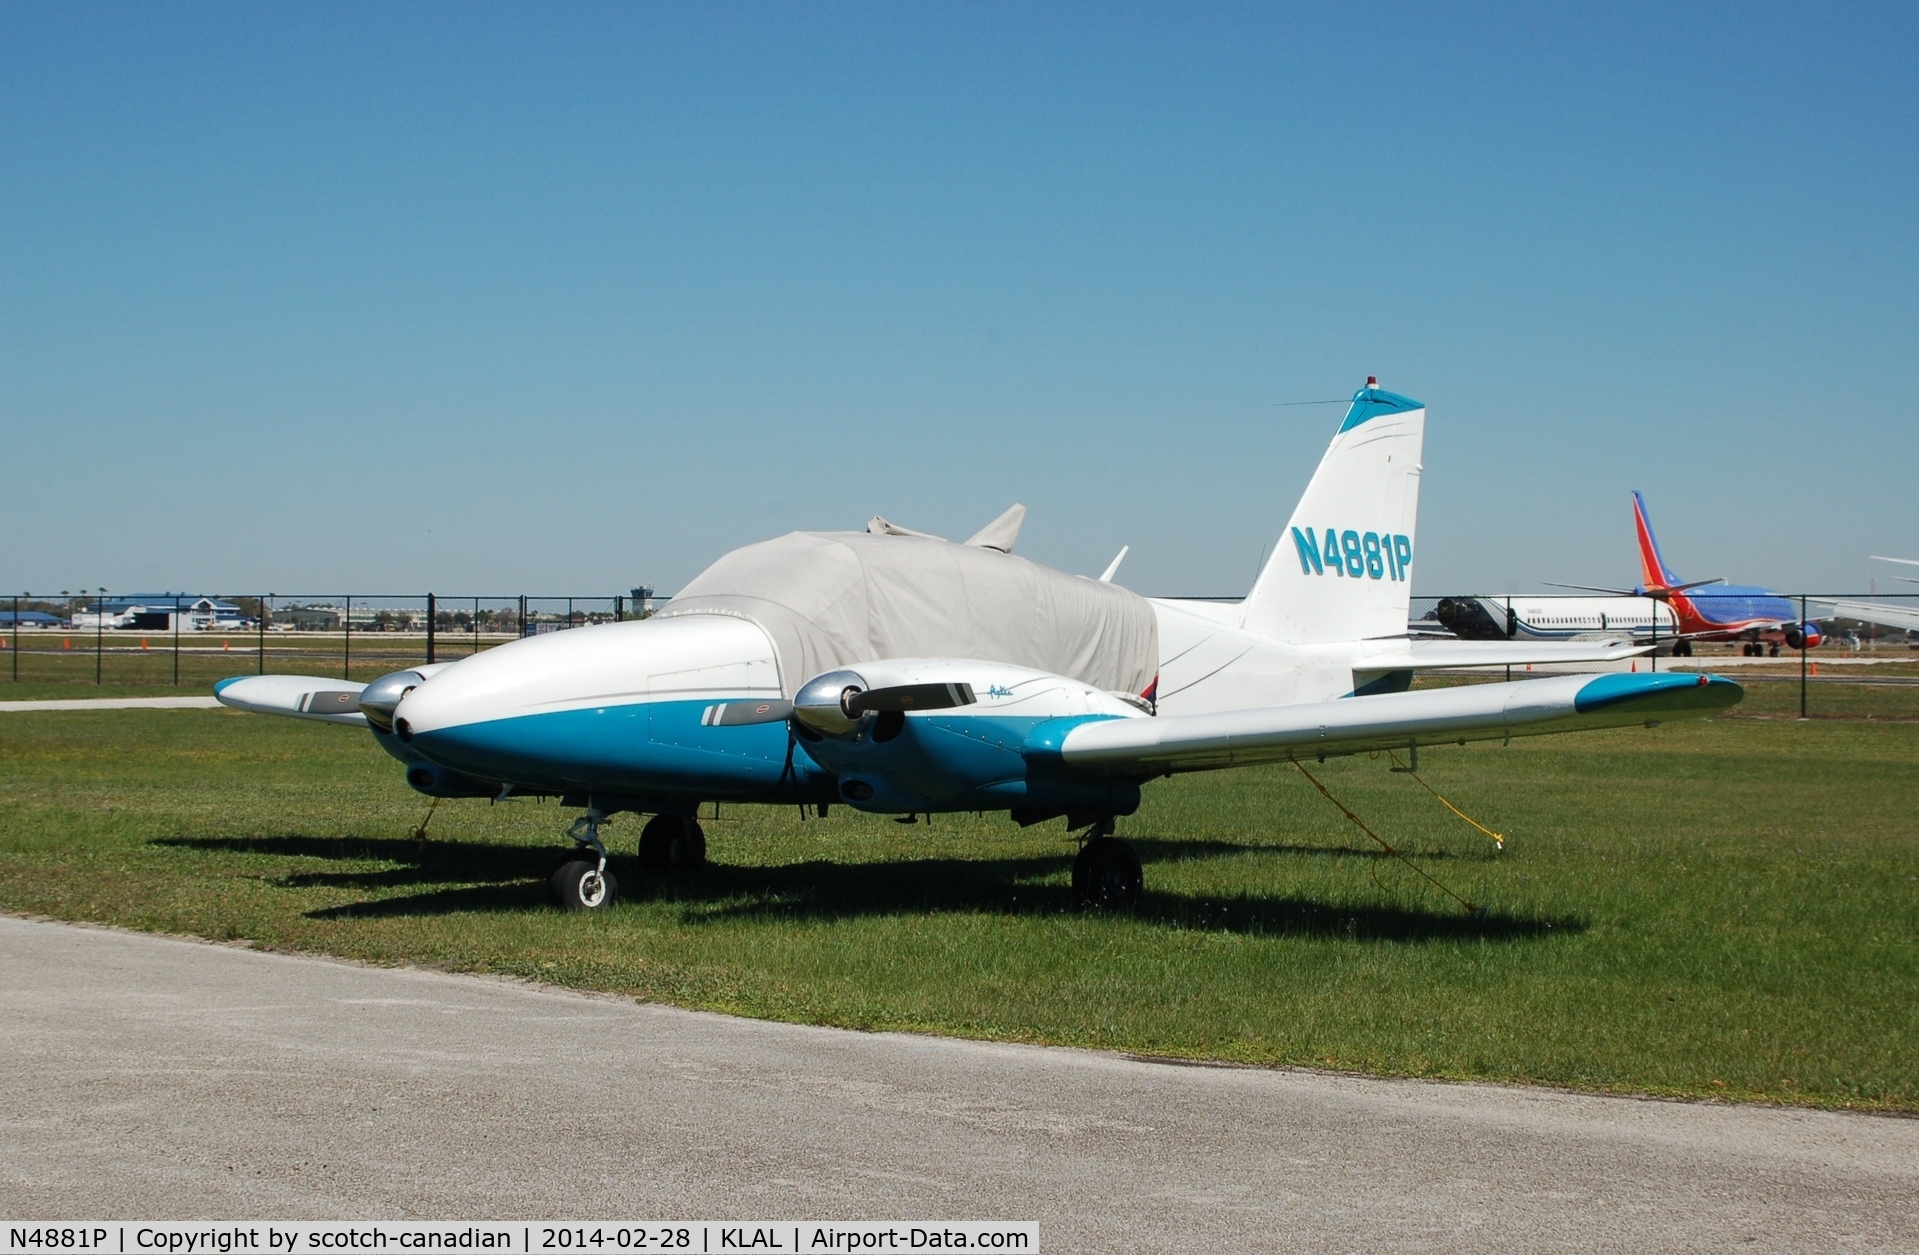 N4881P, 1961 Piper PA-23-250 Aztec C/N 27-462, 1961 Piper PA-23-250, N4881P, at Lakeland Linder Regional Airport, Lakeland, FL